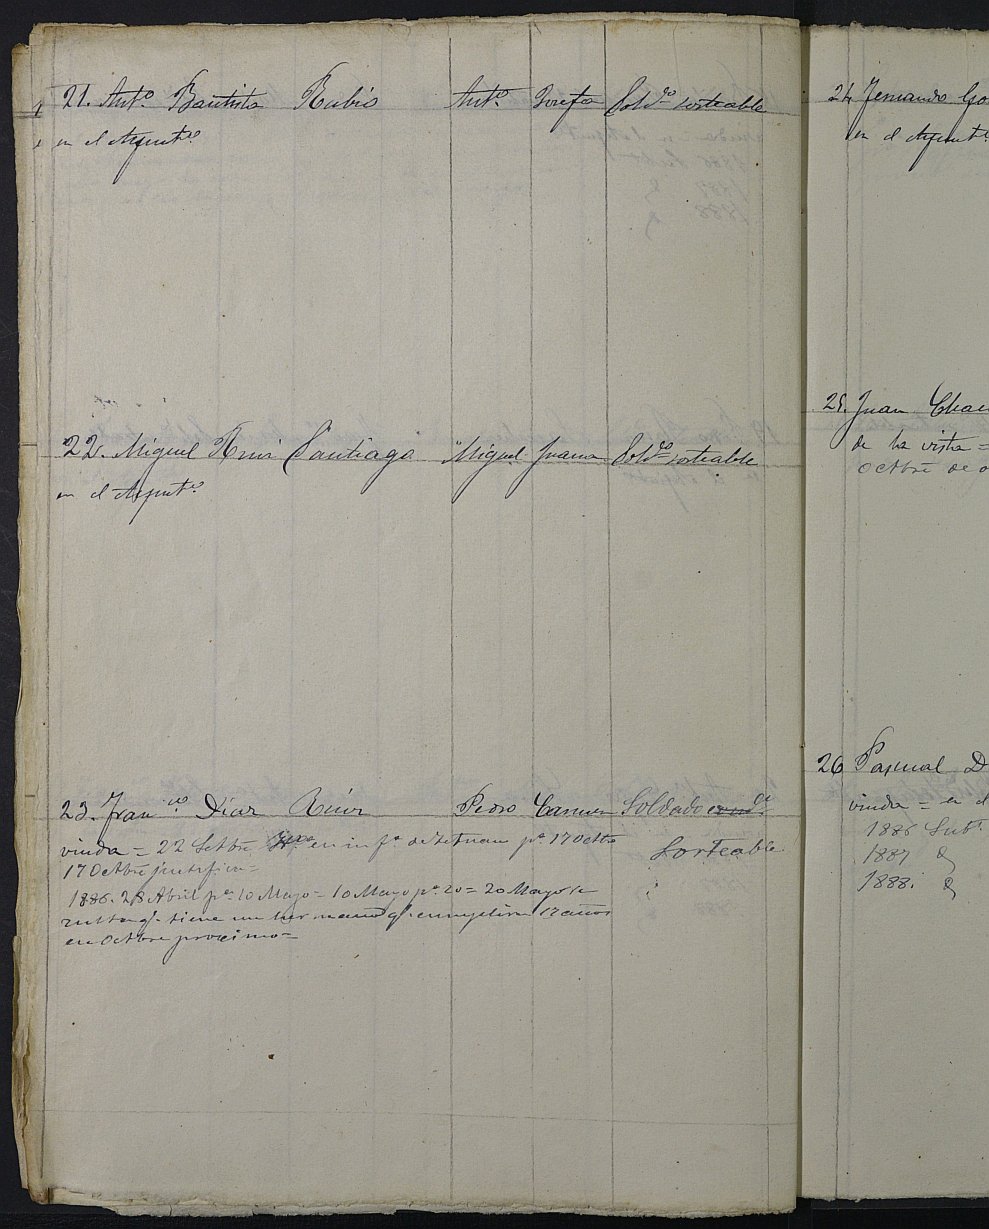 Relación de individuos declarados soldados e ingresados en Caja del 2ª reemplazo del Ayuntamiento de Pliego de 1885.